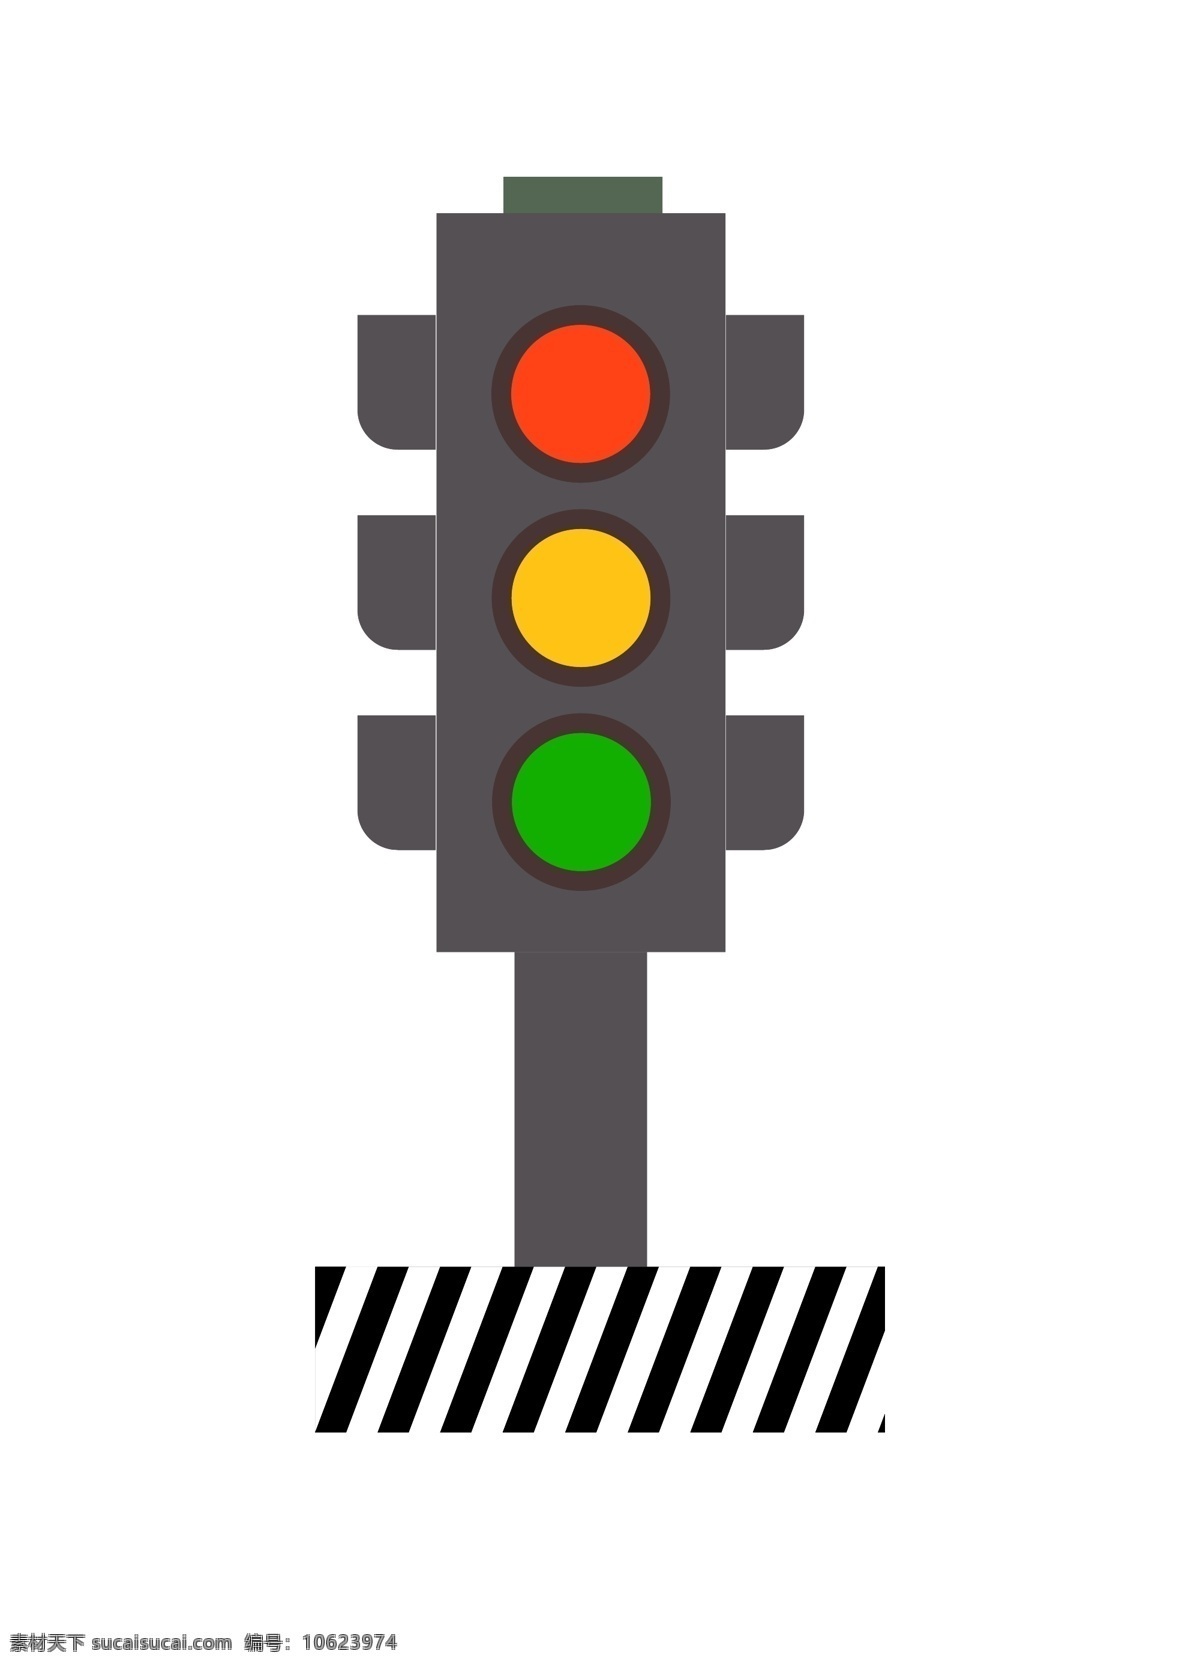 灰色 立体 红绿灯 插图 红灯停 绿灯行 黄 灯 亮 停 交通工具 十字路口交通 灰色架子 立体红绿灯 交通指挥系统